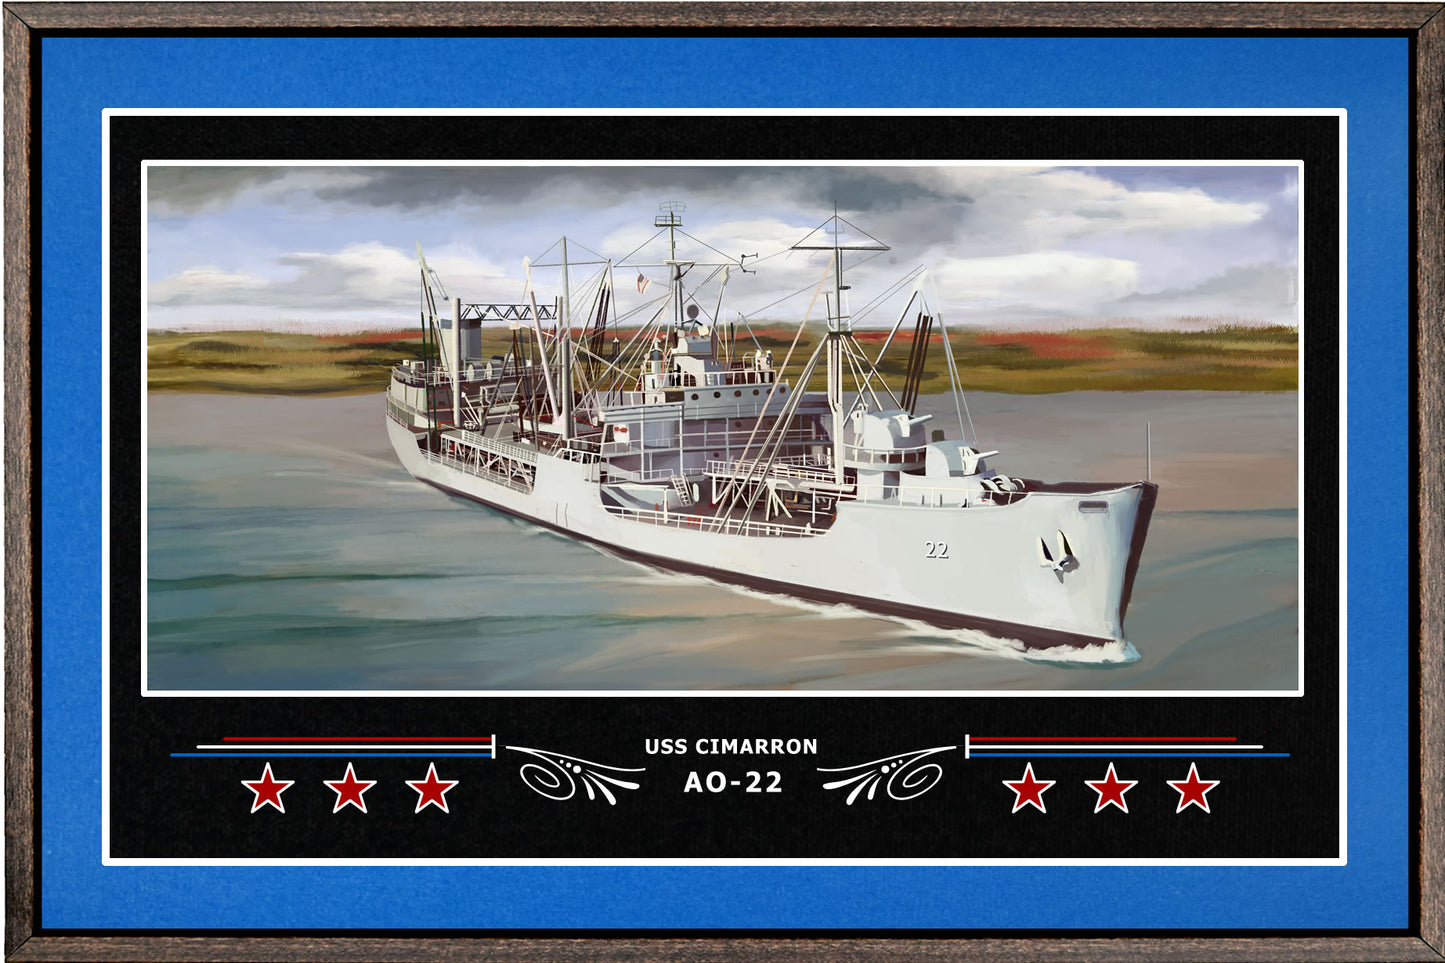 USS CIMARRON AO 22 BOX FRAMED CANVAS ART BLUE